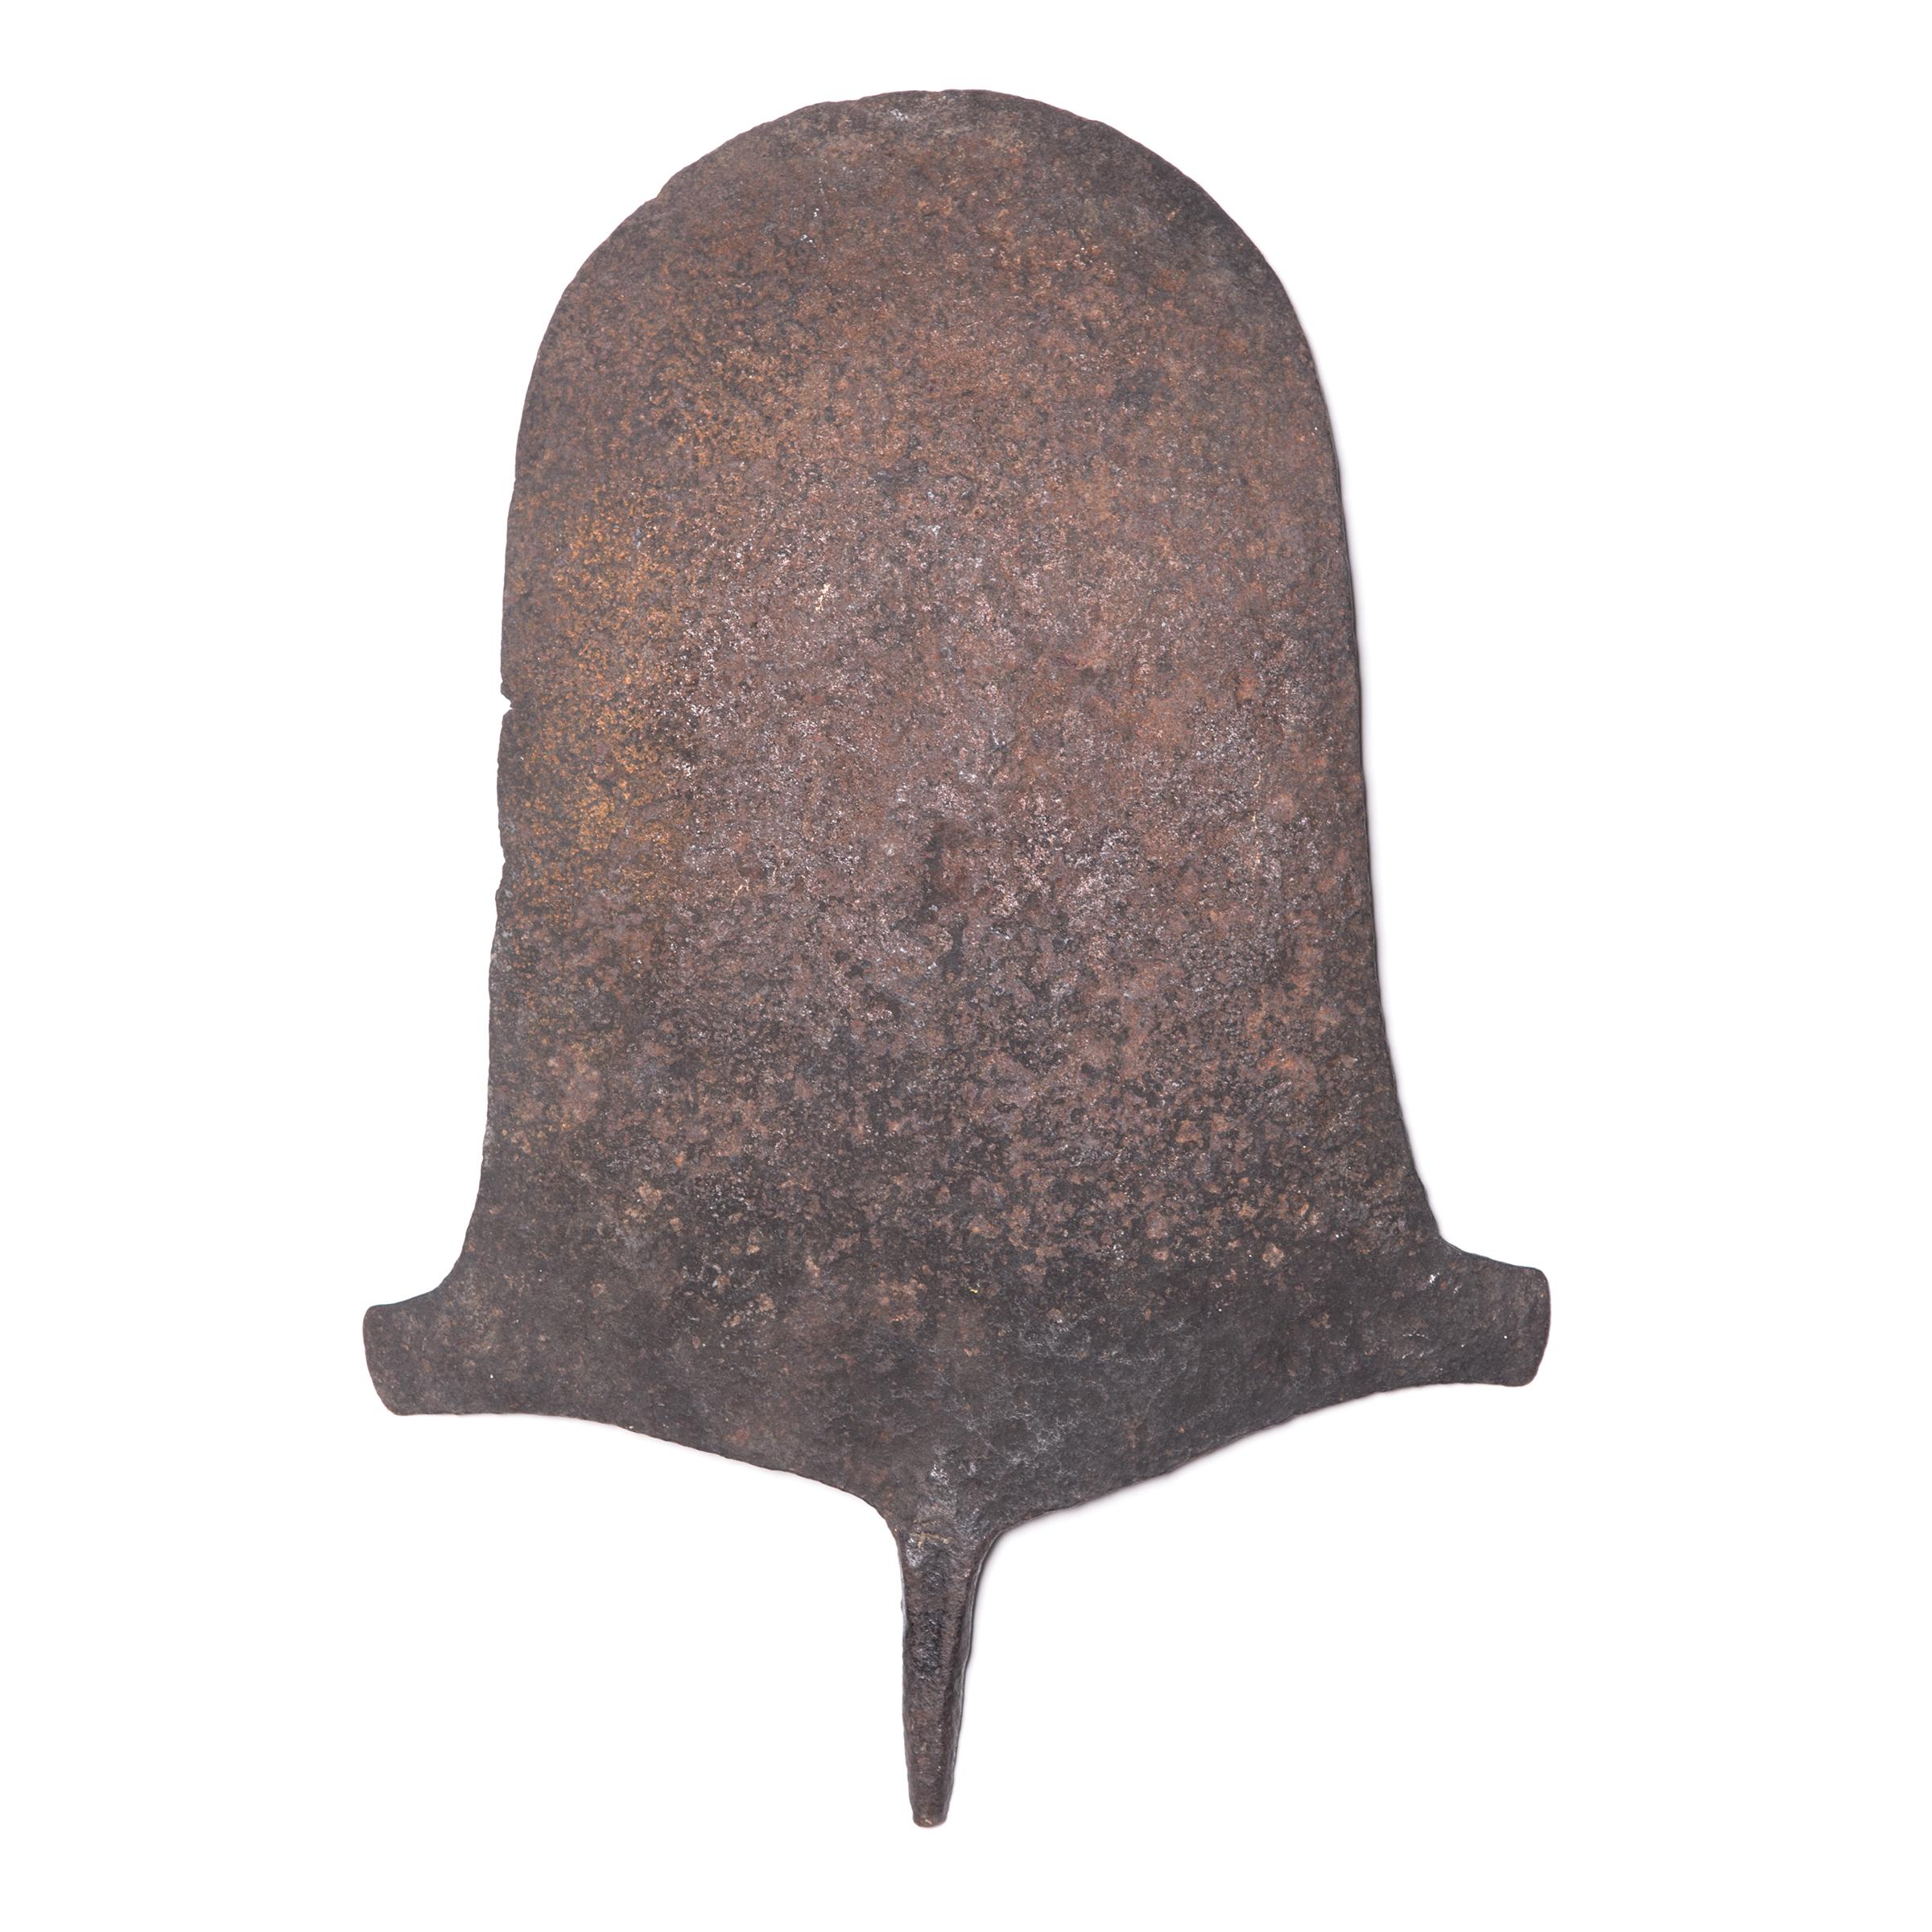 In vielen vorkolonialen Regionen Afrikas war Eisen so wertvoll, dass Werkzeuge oft als Zahlungsmittel für seltene, aber wichtige Transaktionen dienten. Diese große Eisenform ist ein Währungsstück der Afo-Völker im Norden Nigerias und ist der Klinge